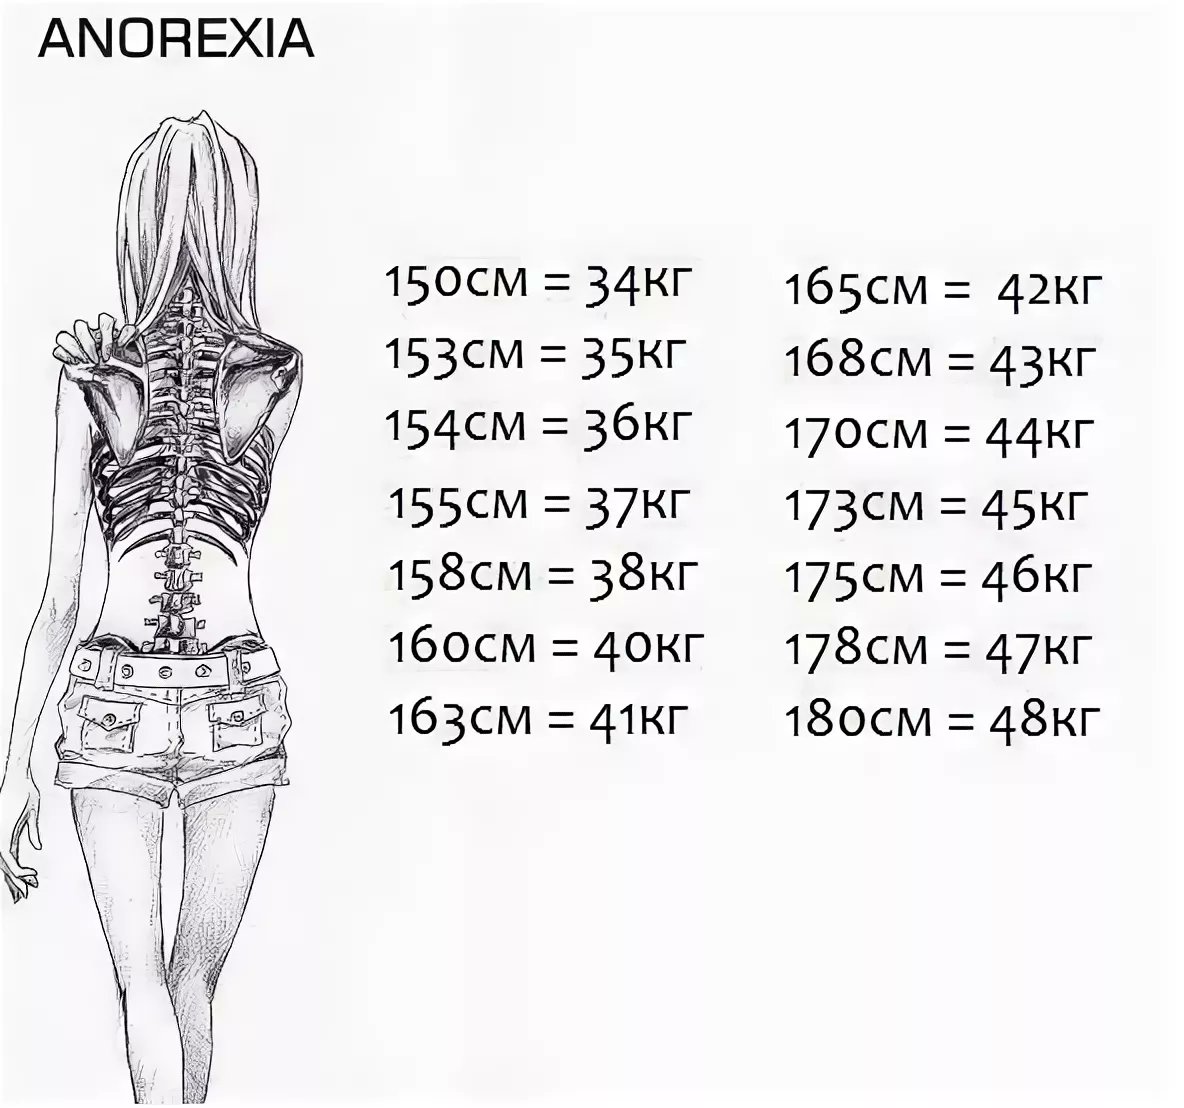 Стадии анорексии вес таблица